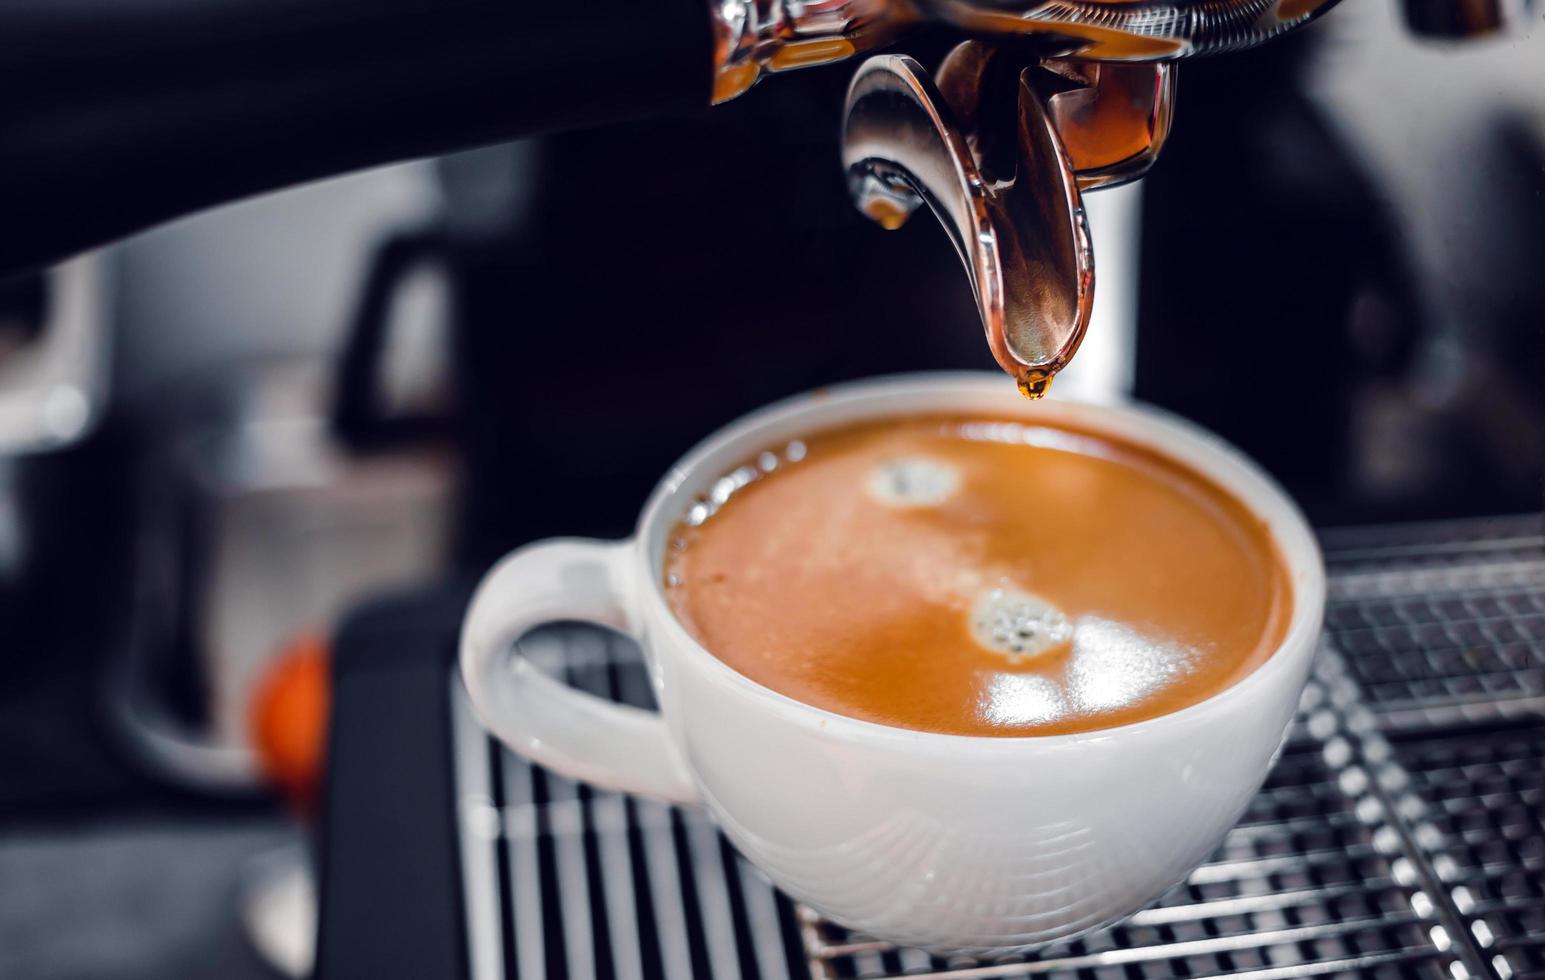 extracción de café de la máquina de café con un portafiltro que vierte café en una taza, espresso de la máquina de café en la cafetería foto